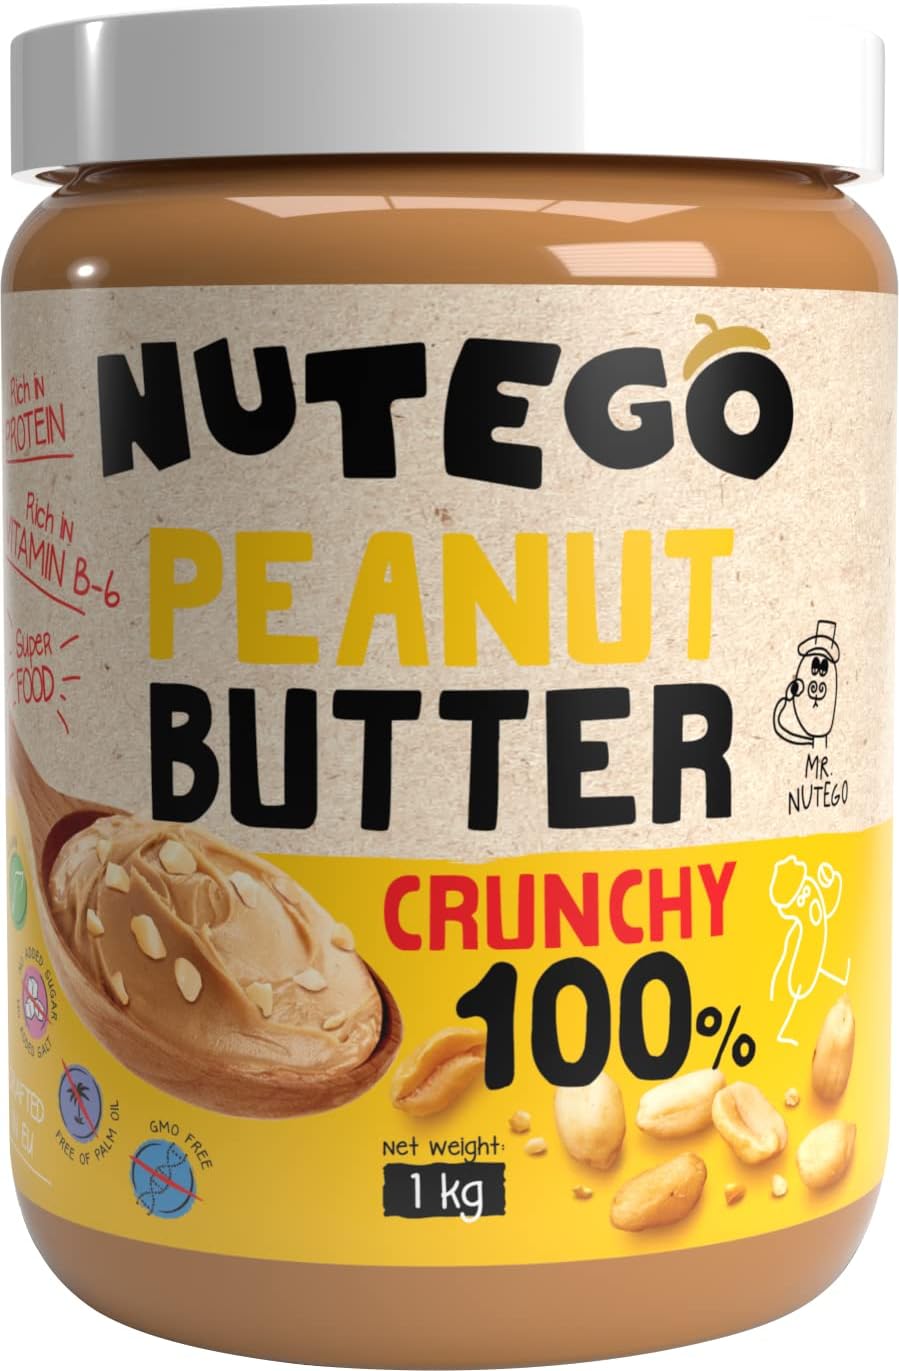 Nutego Crunchy Peanut Butter 1kg